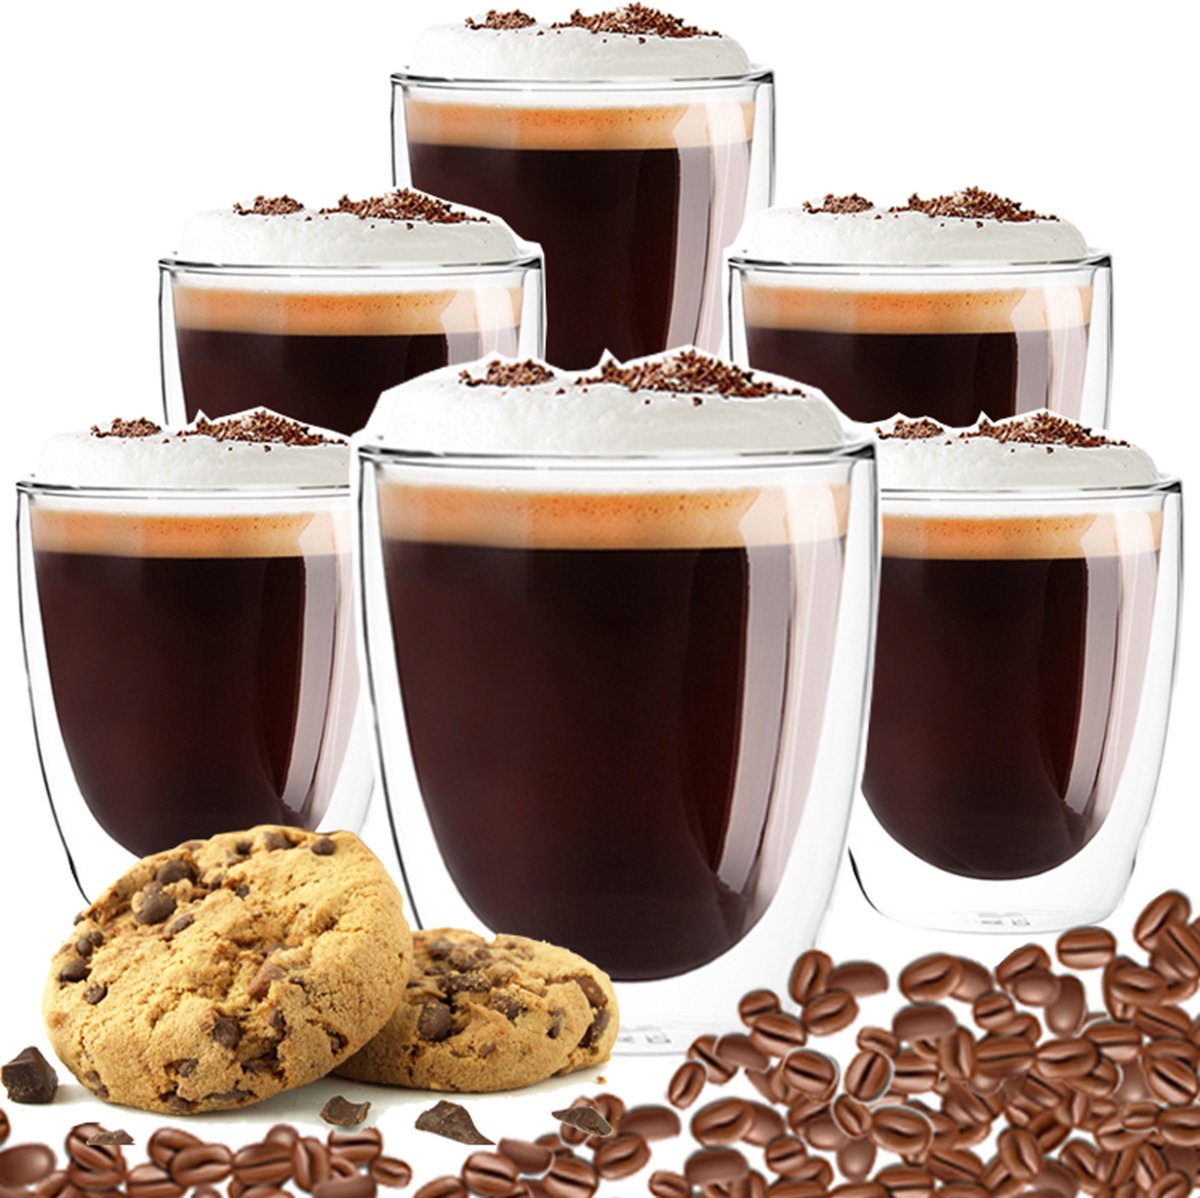 Luxe Dubbelwandige Koffieglazen - Latte Macchiato Glazen - Cappuccino Glazen - 300 ML - Set Van 6